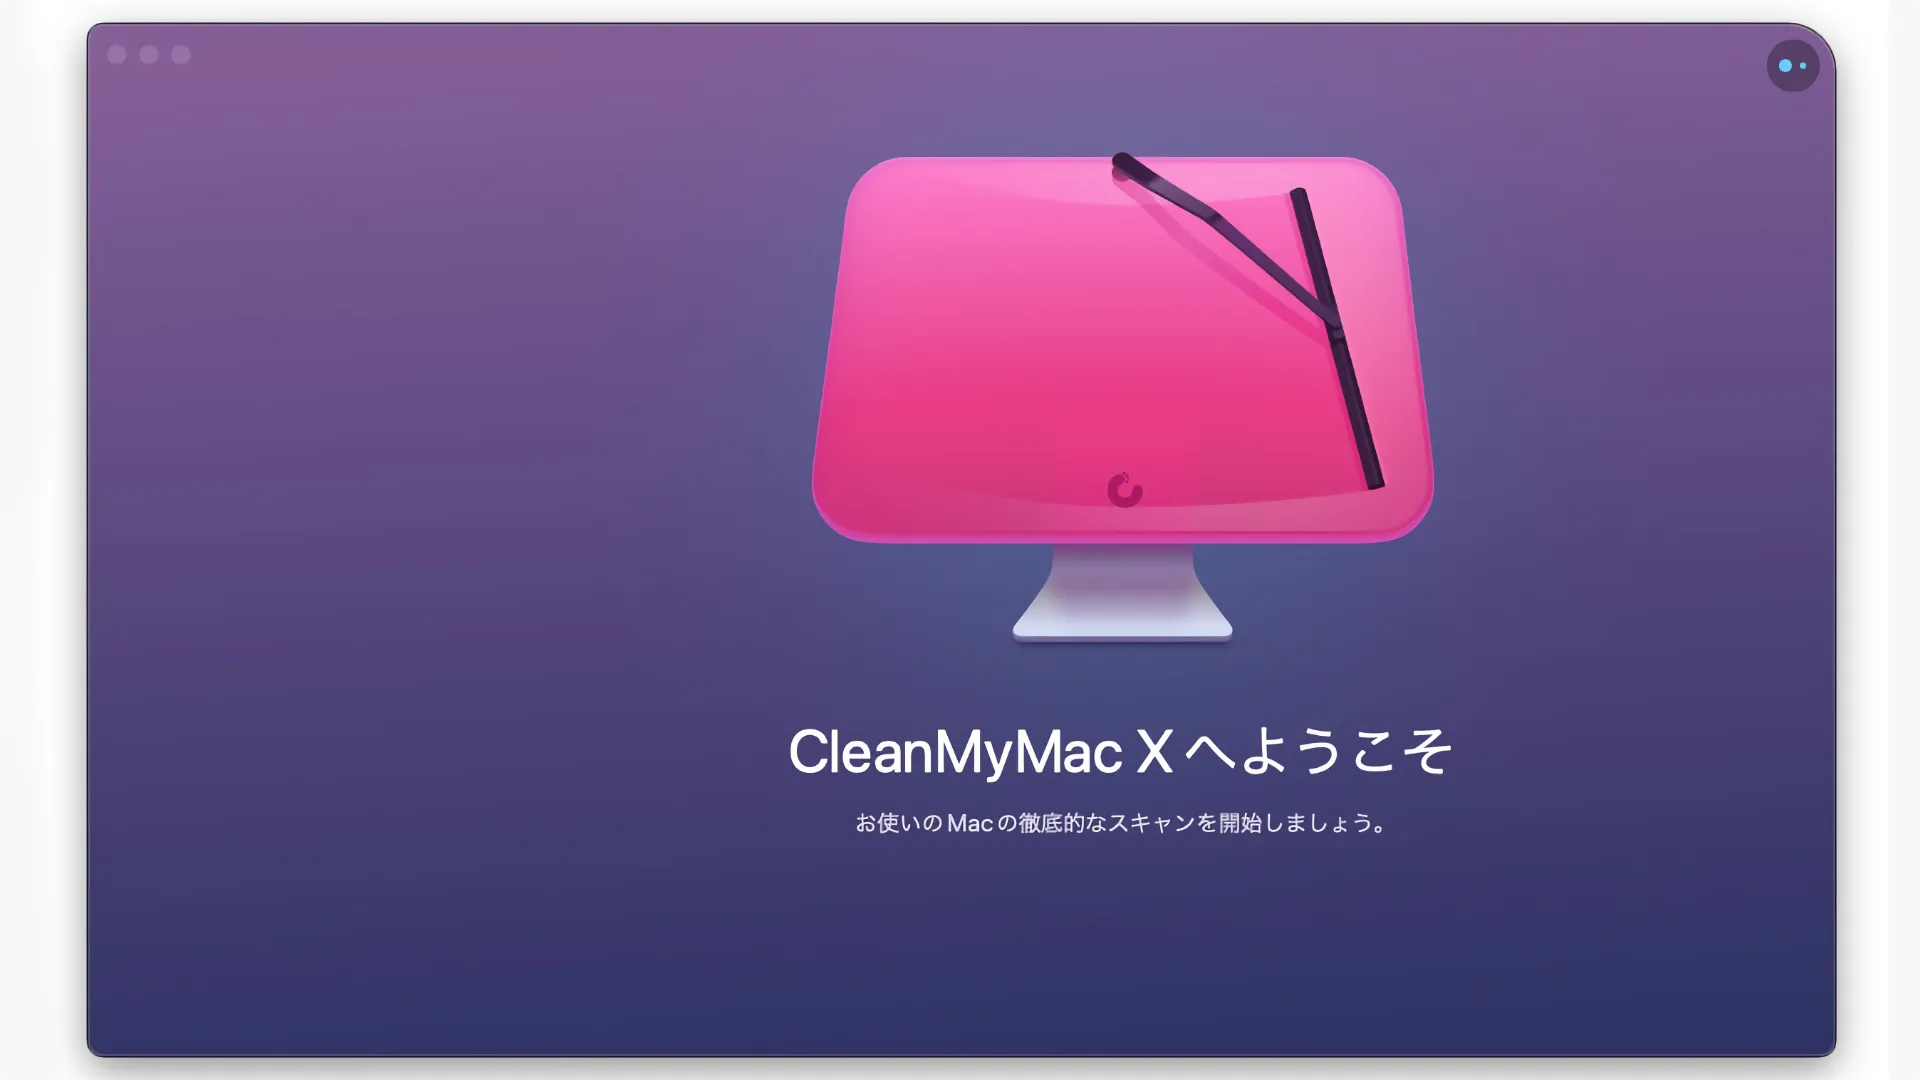 Macのメンテナンスソフト